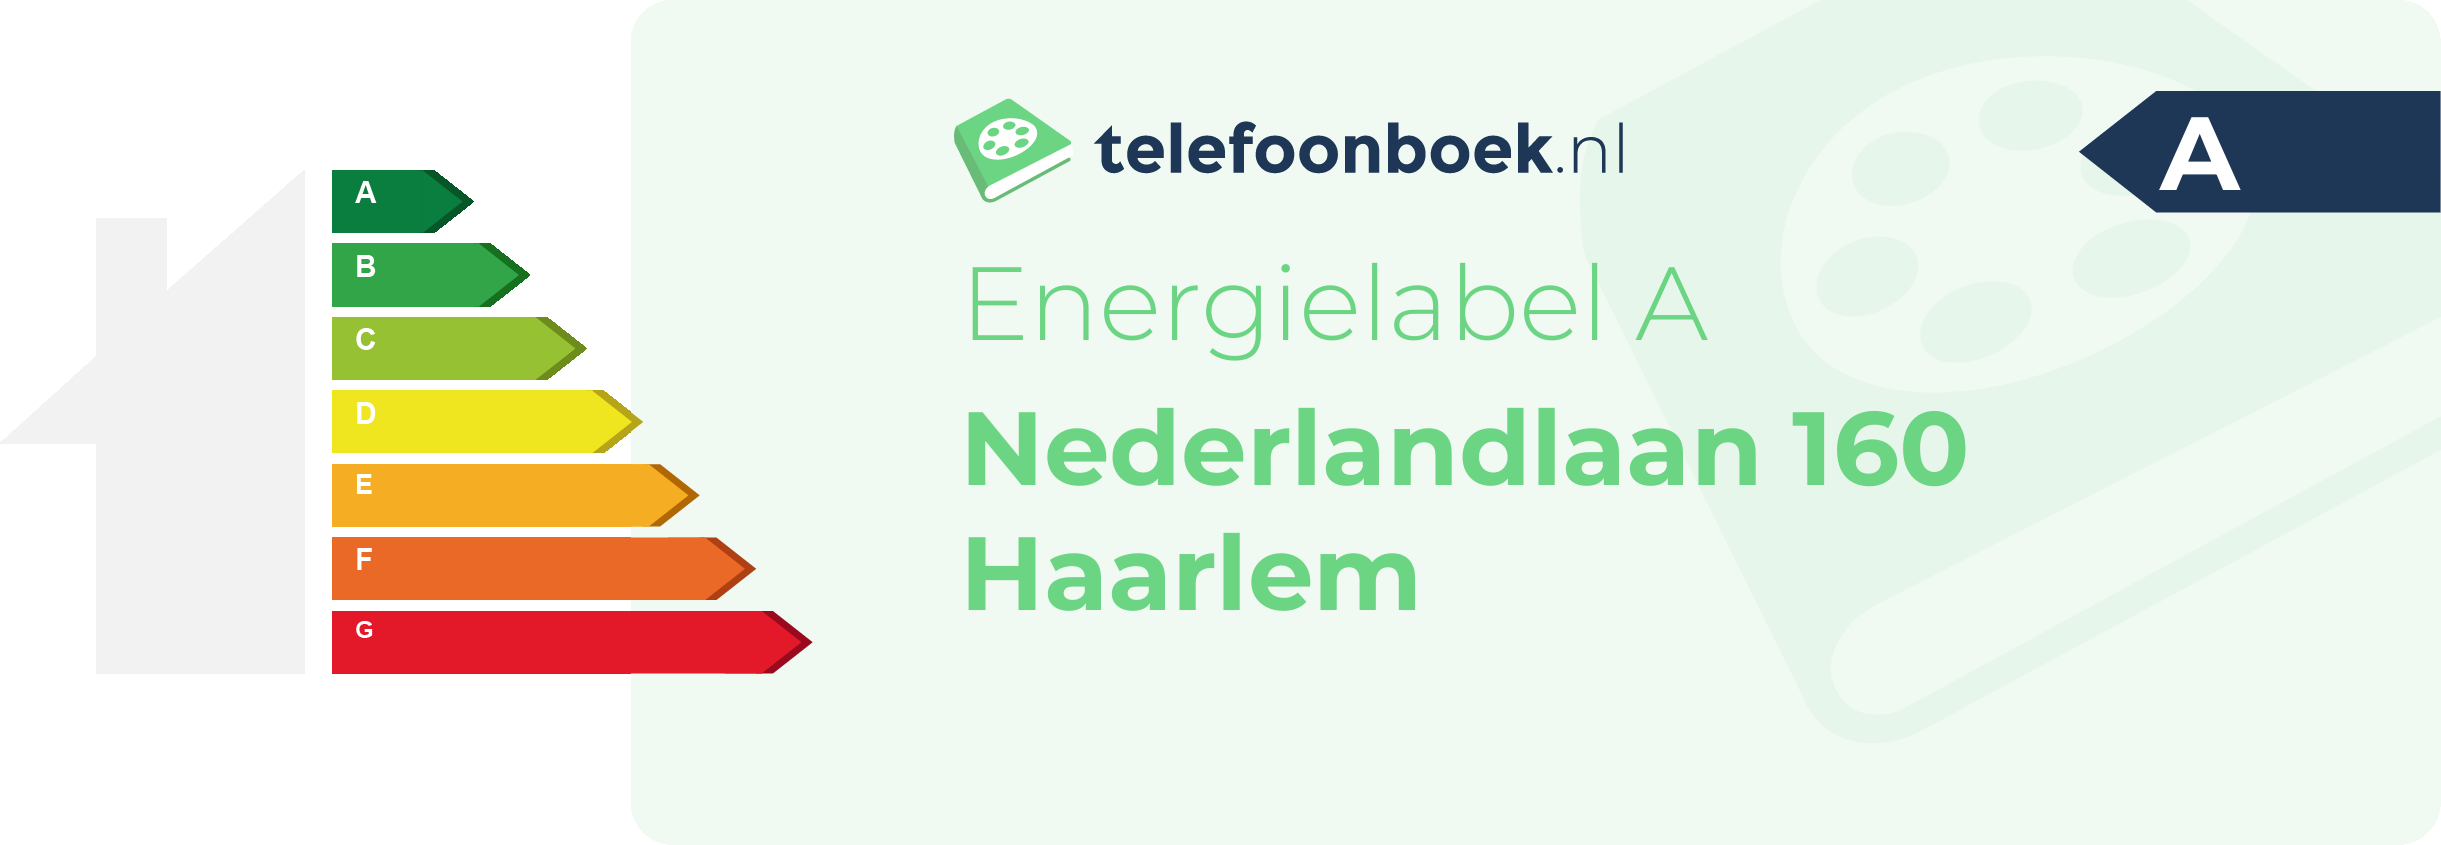 Energielabel Nederlandlaan 160 Haarlem